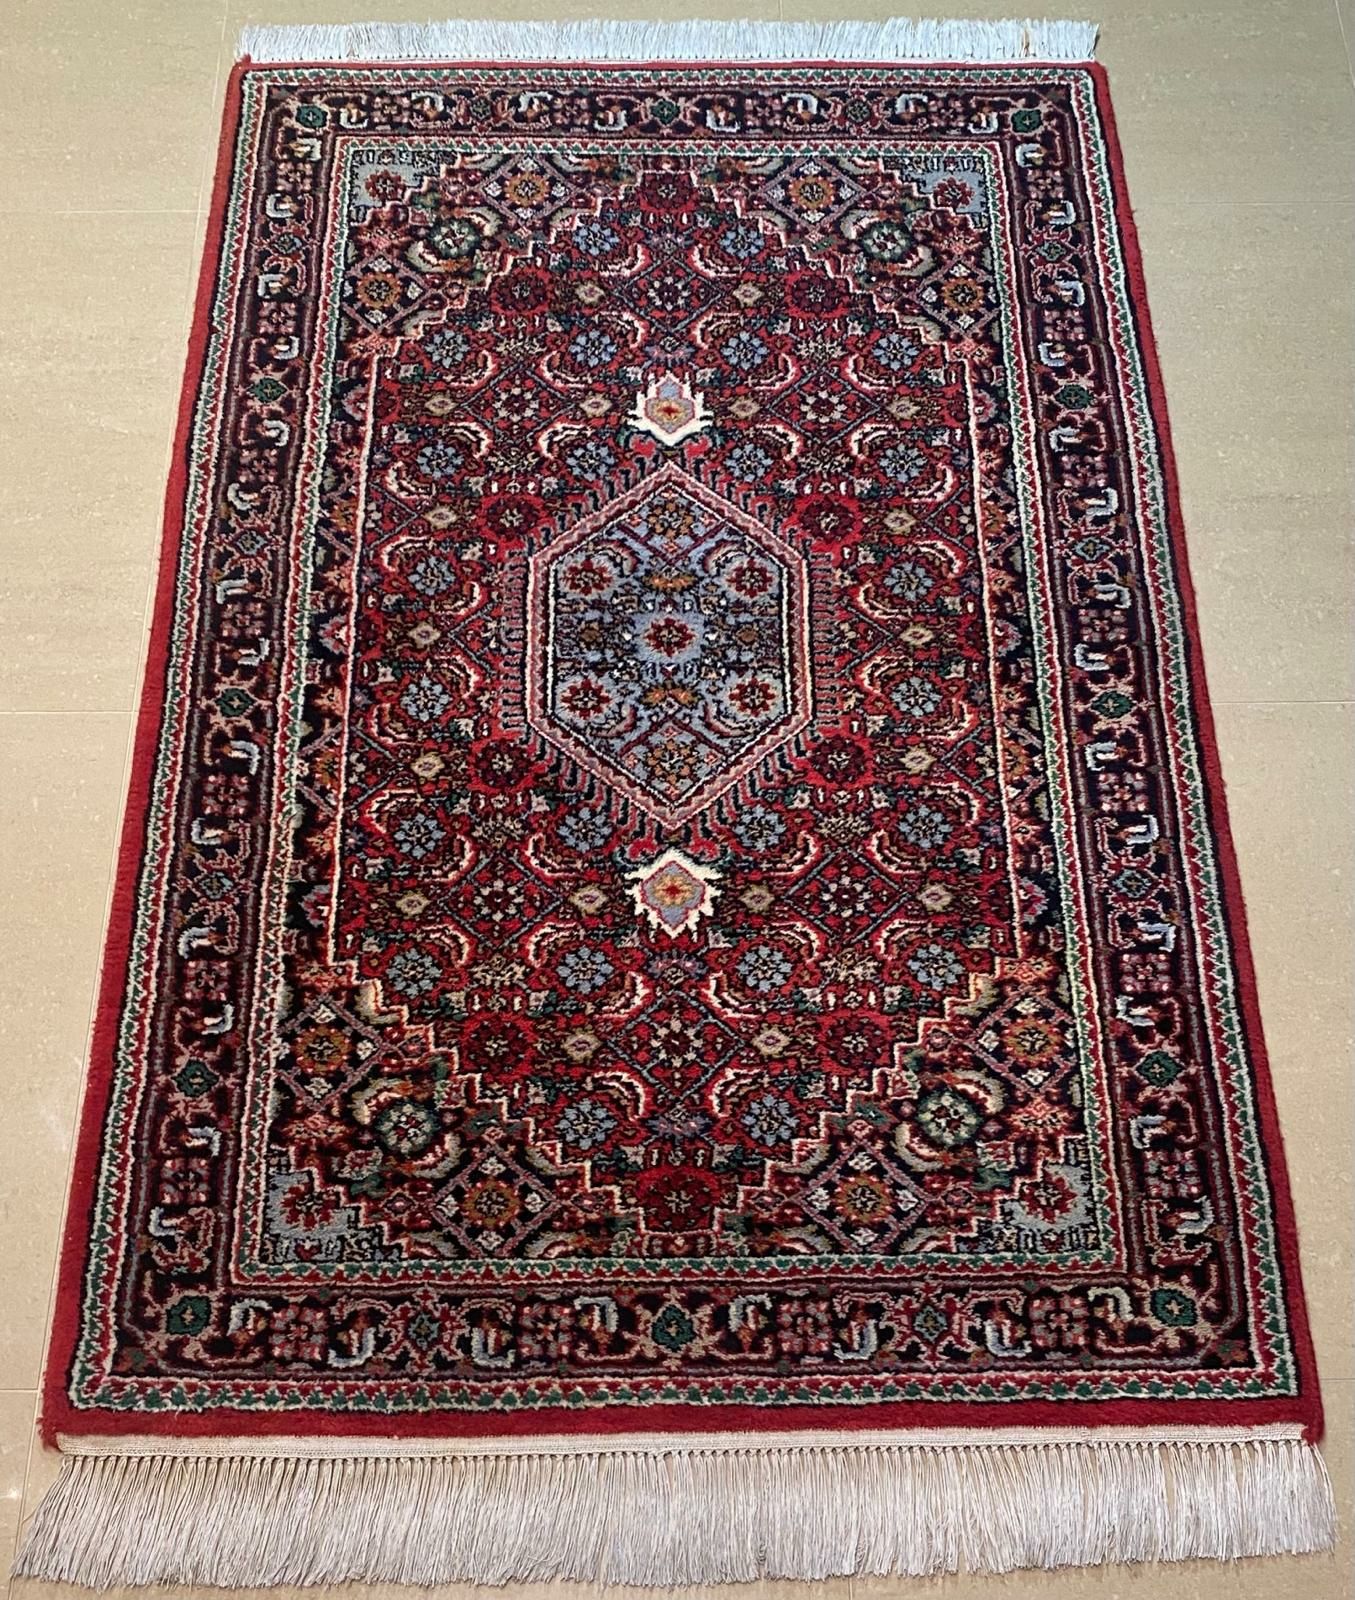 Bidjar 160 # 95 Niezwykle piękny ręcznie tkany dywan perski - wełniany